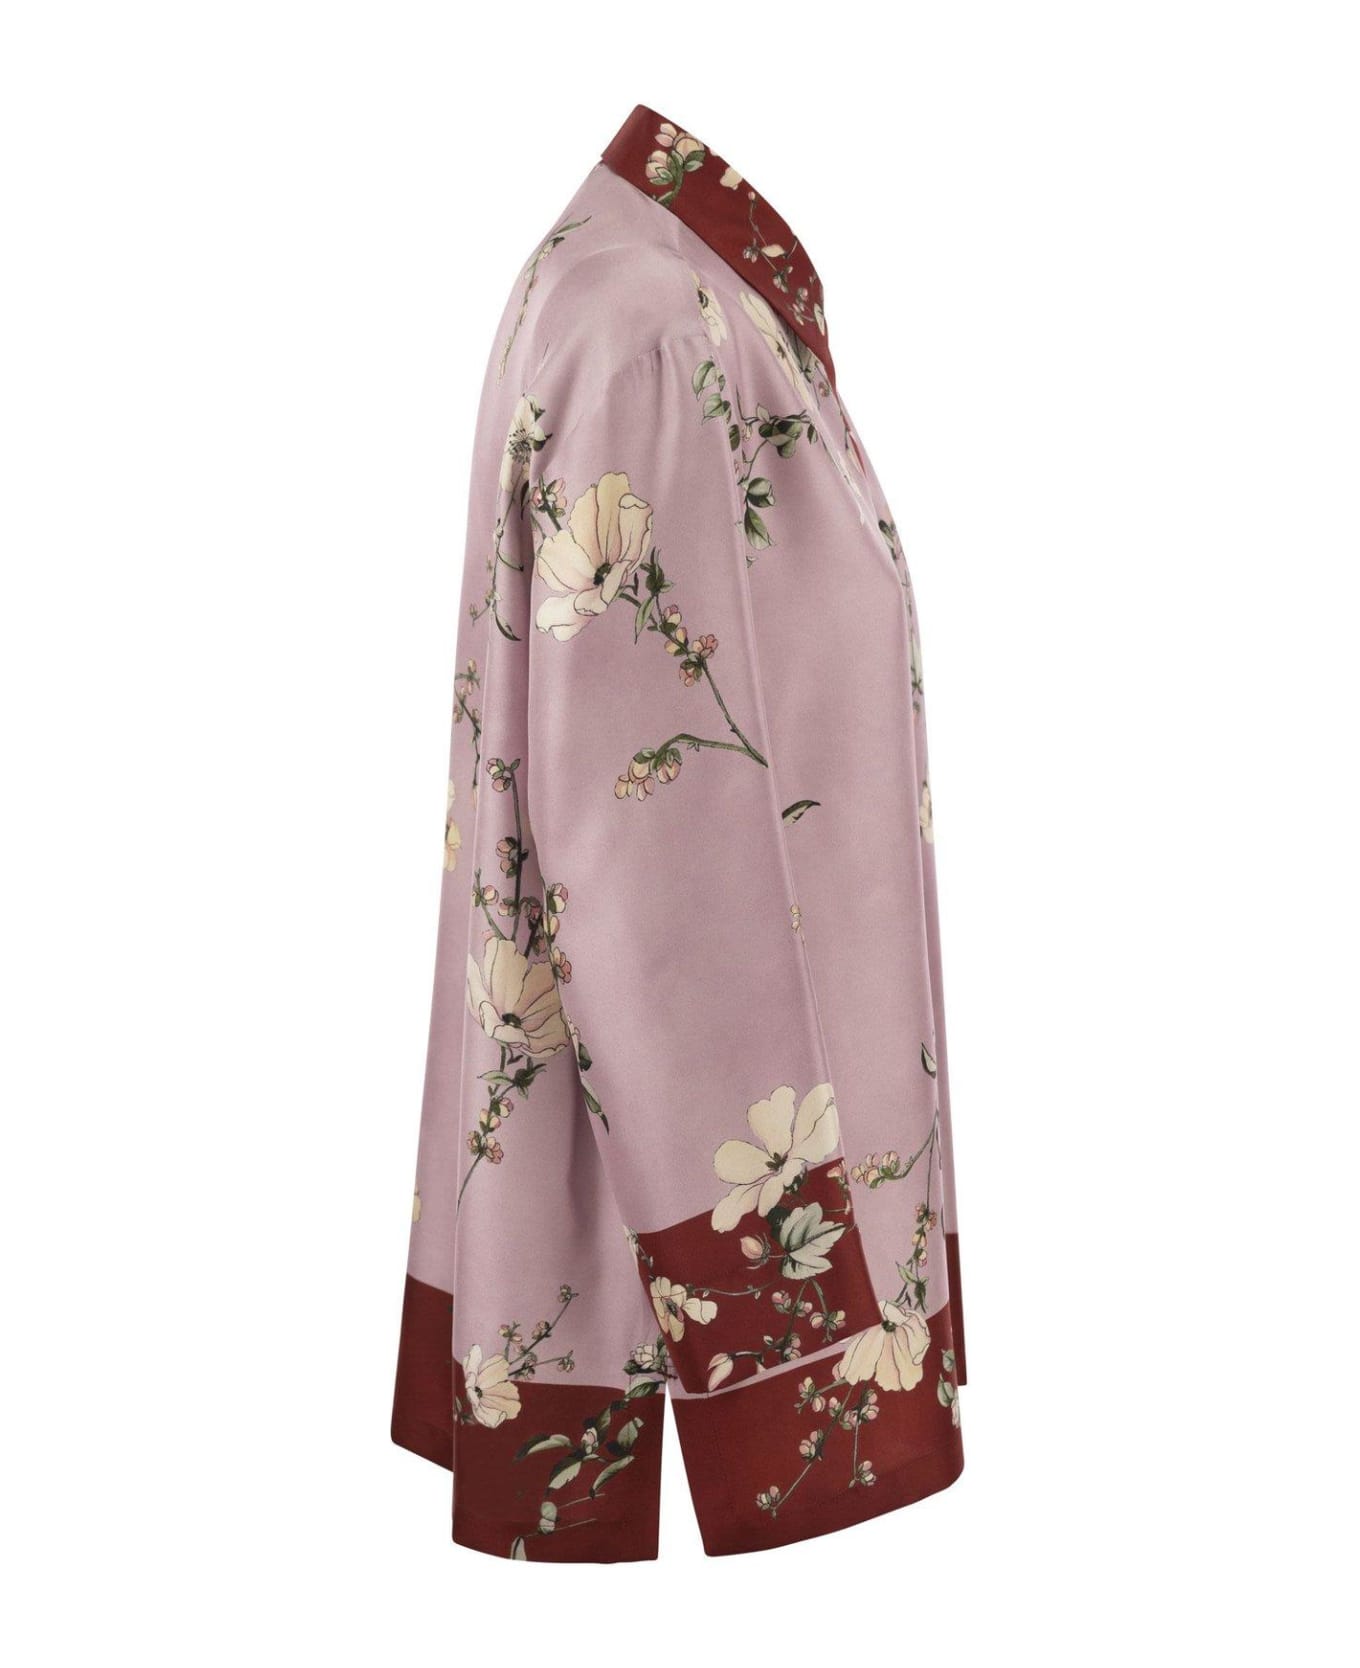 'S Max Mara Floral Printed Long-sleeved Shirt - Rosa/rosso シャツ